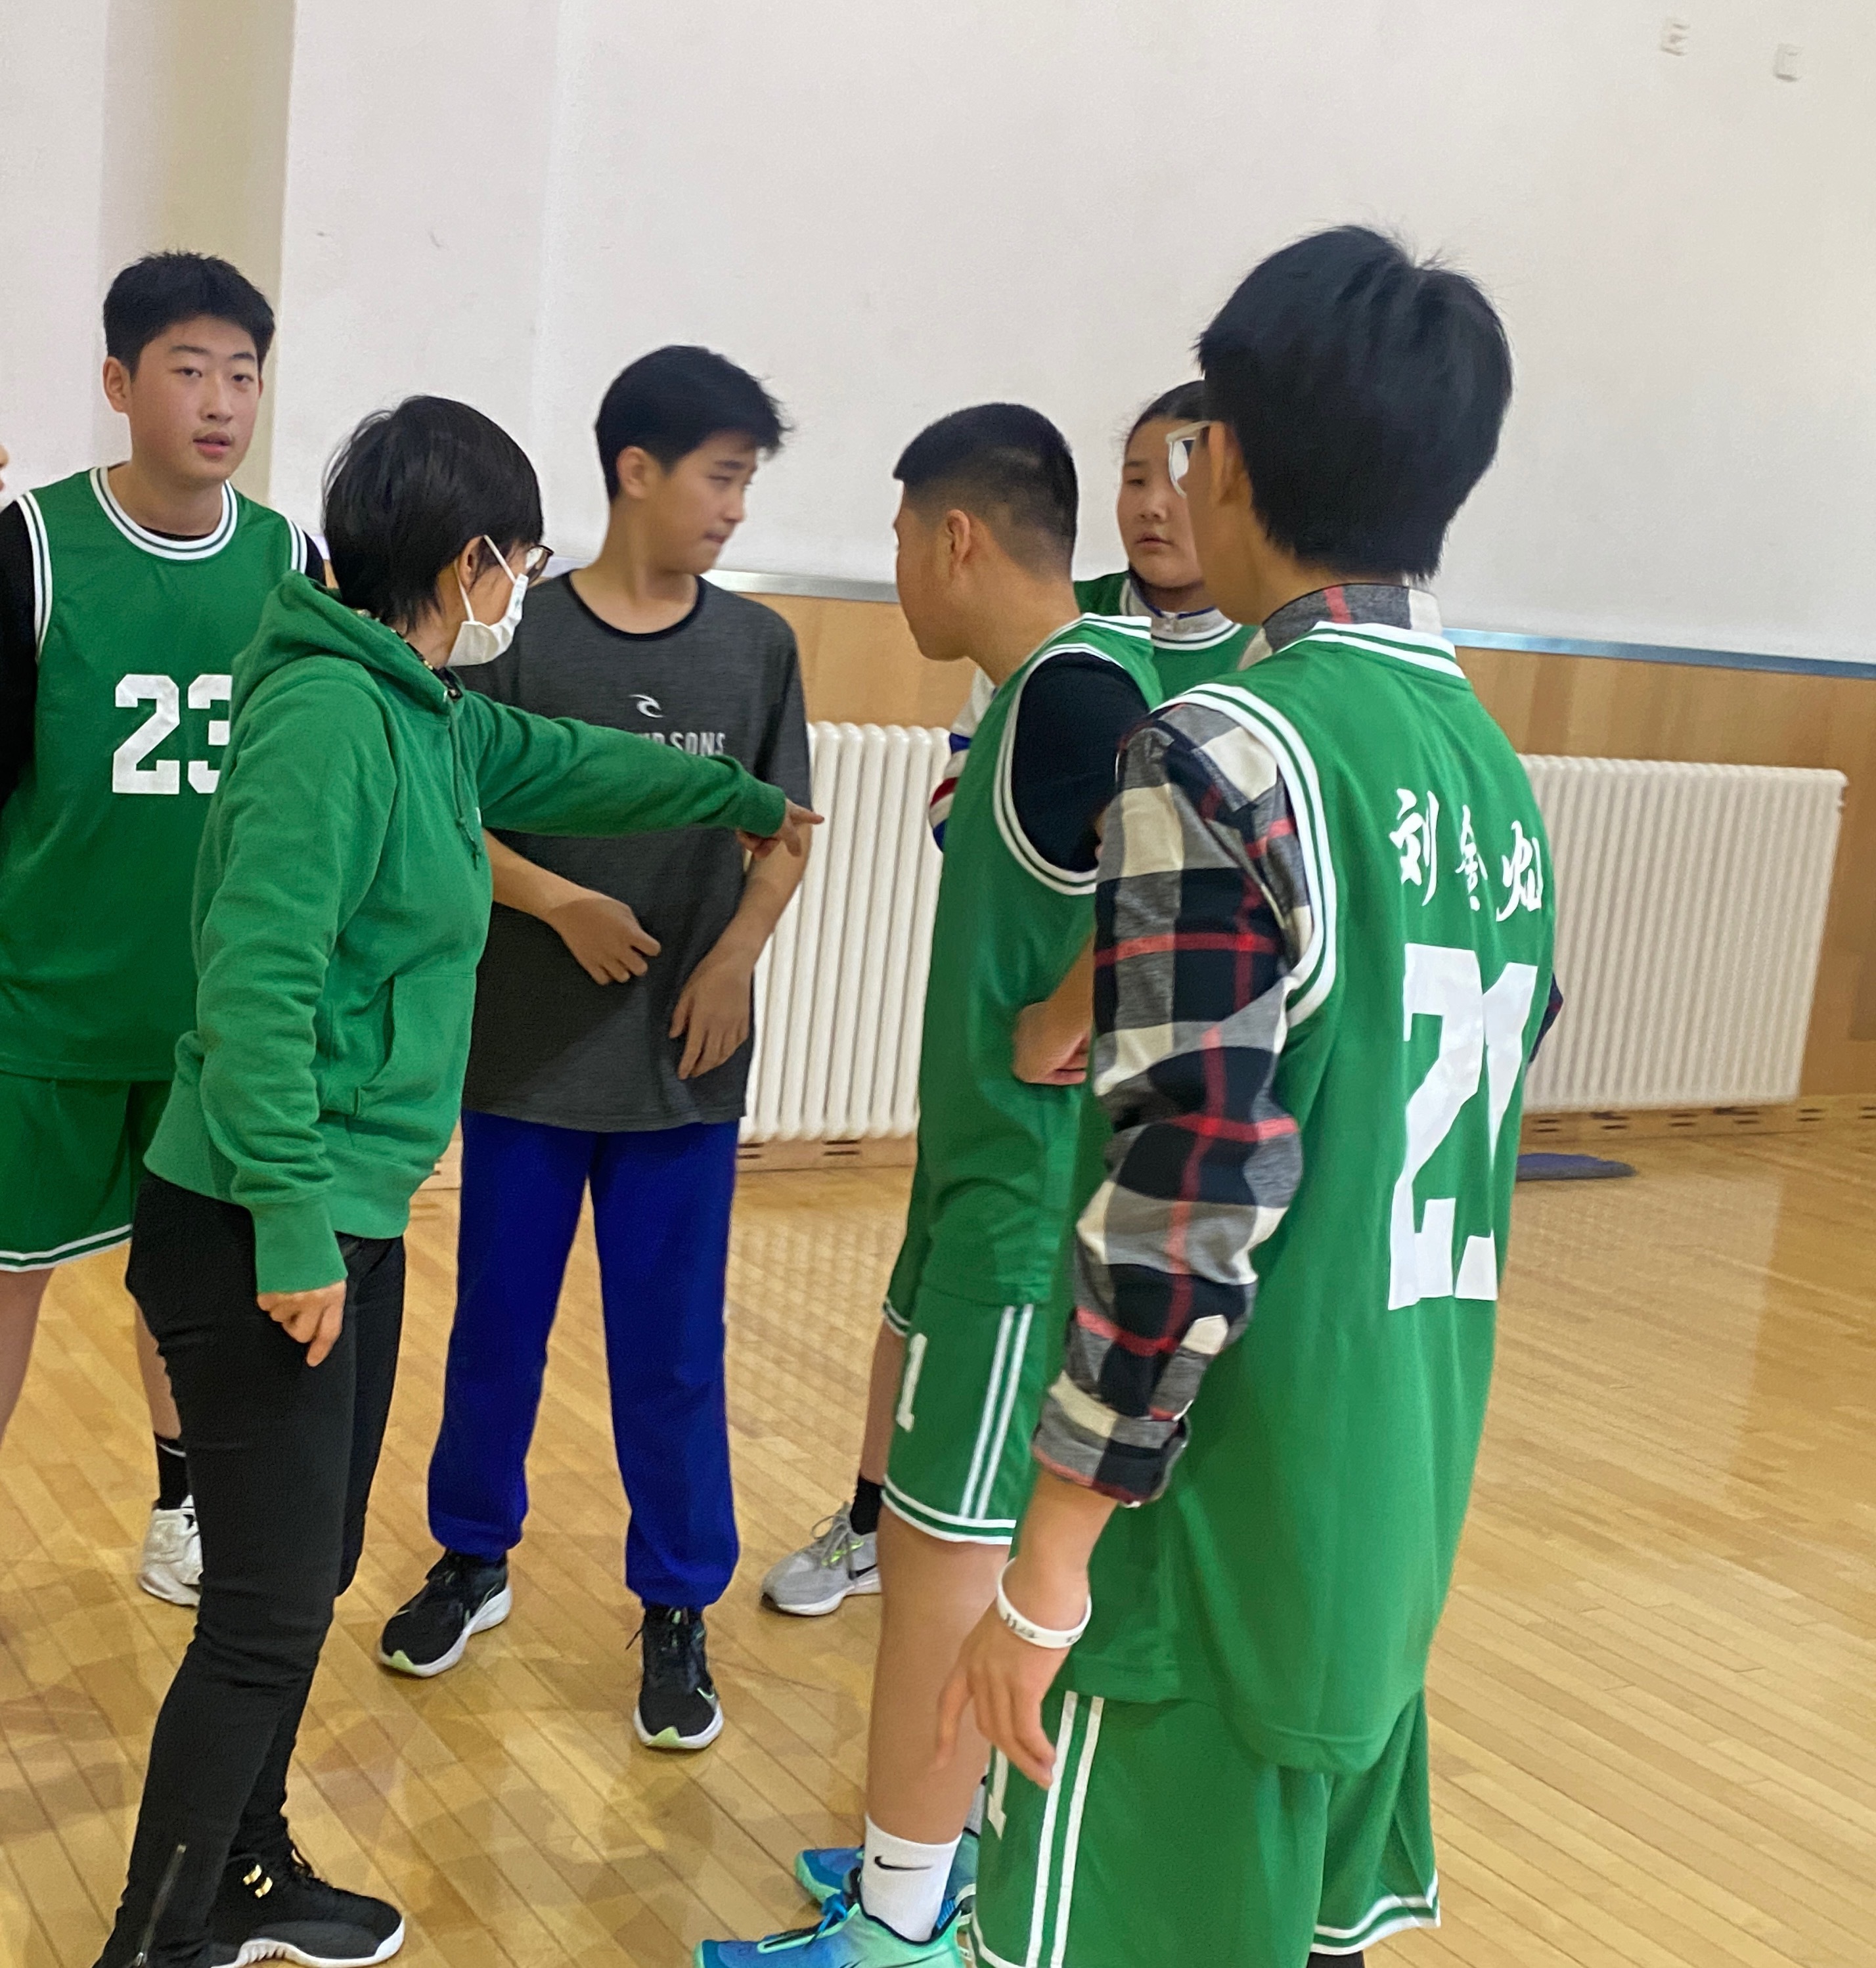 正青春,一起向未来——北京市第十一中学篮球赛